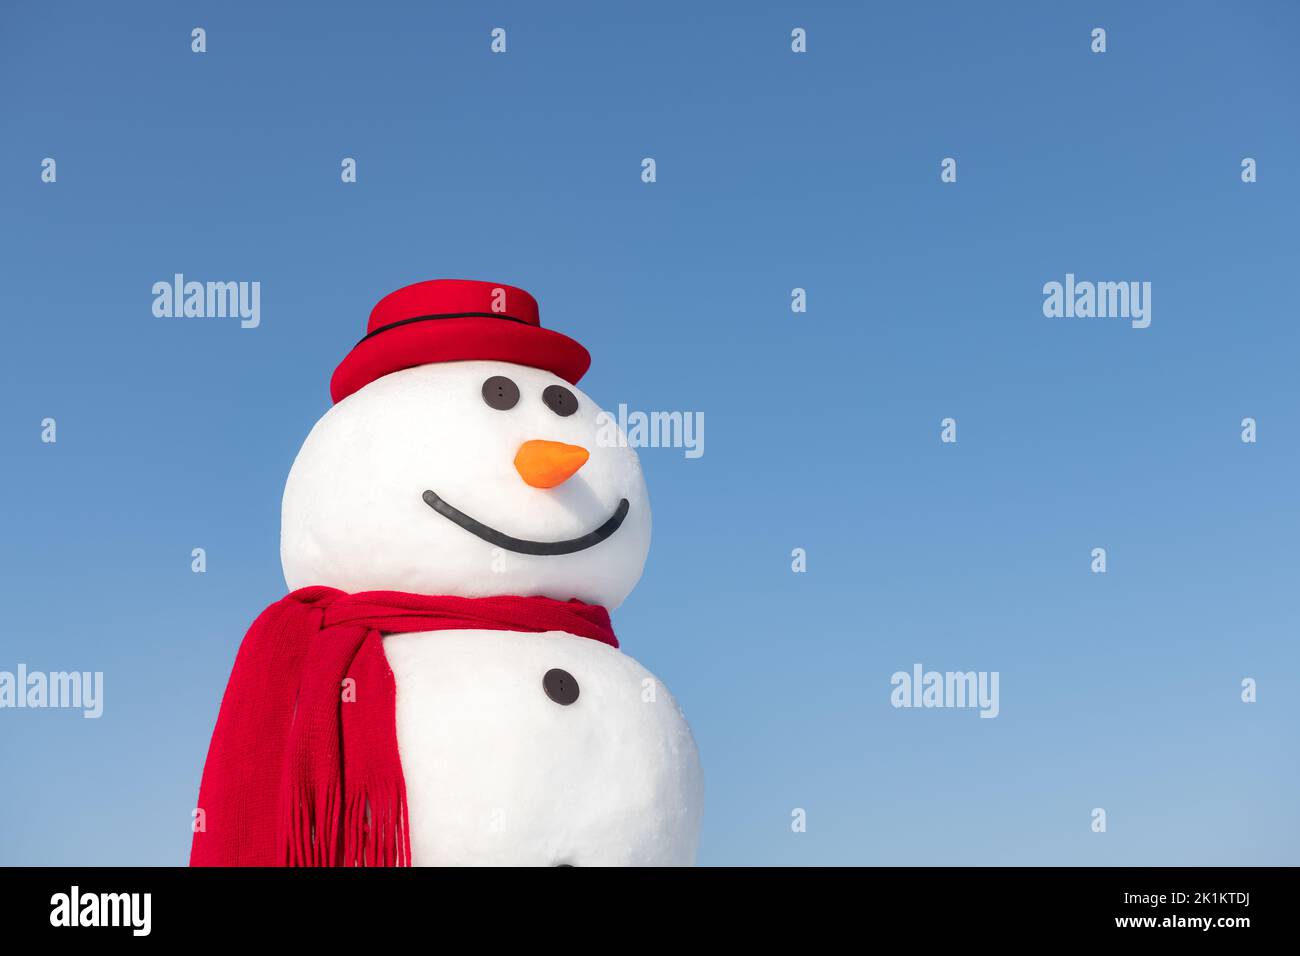 Simpatico pupazzo di neve in elegante cappello rosso e chiocciera rossa su sfondo blu Foto Stock